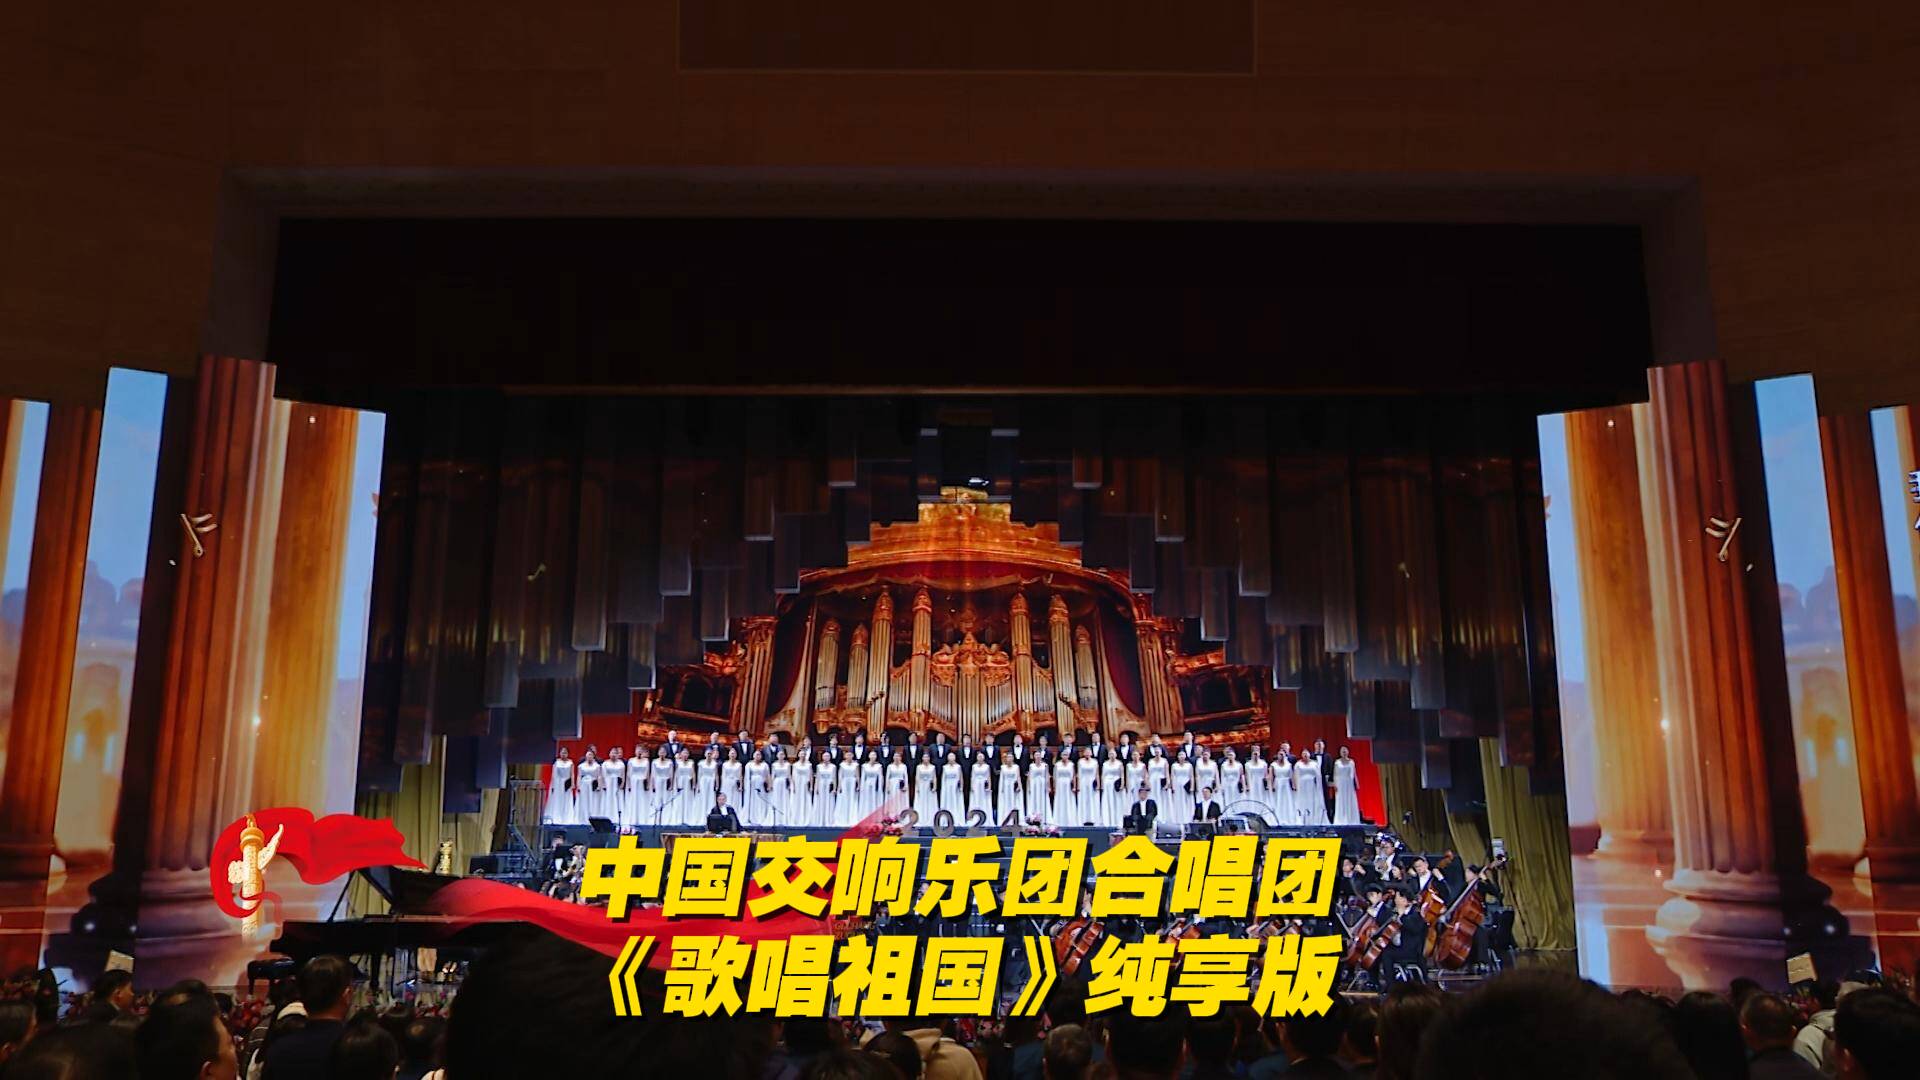 中国交响乐团及合唱团，带领全场合唱《歌唱祖国》。这激昂的旋律，让人热血沸腾！